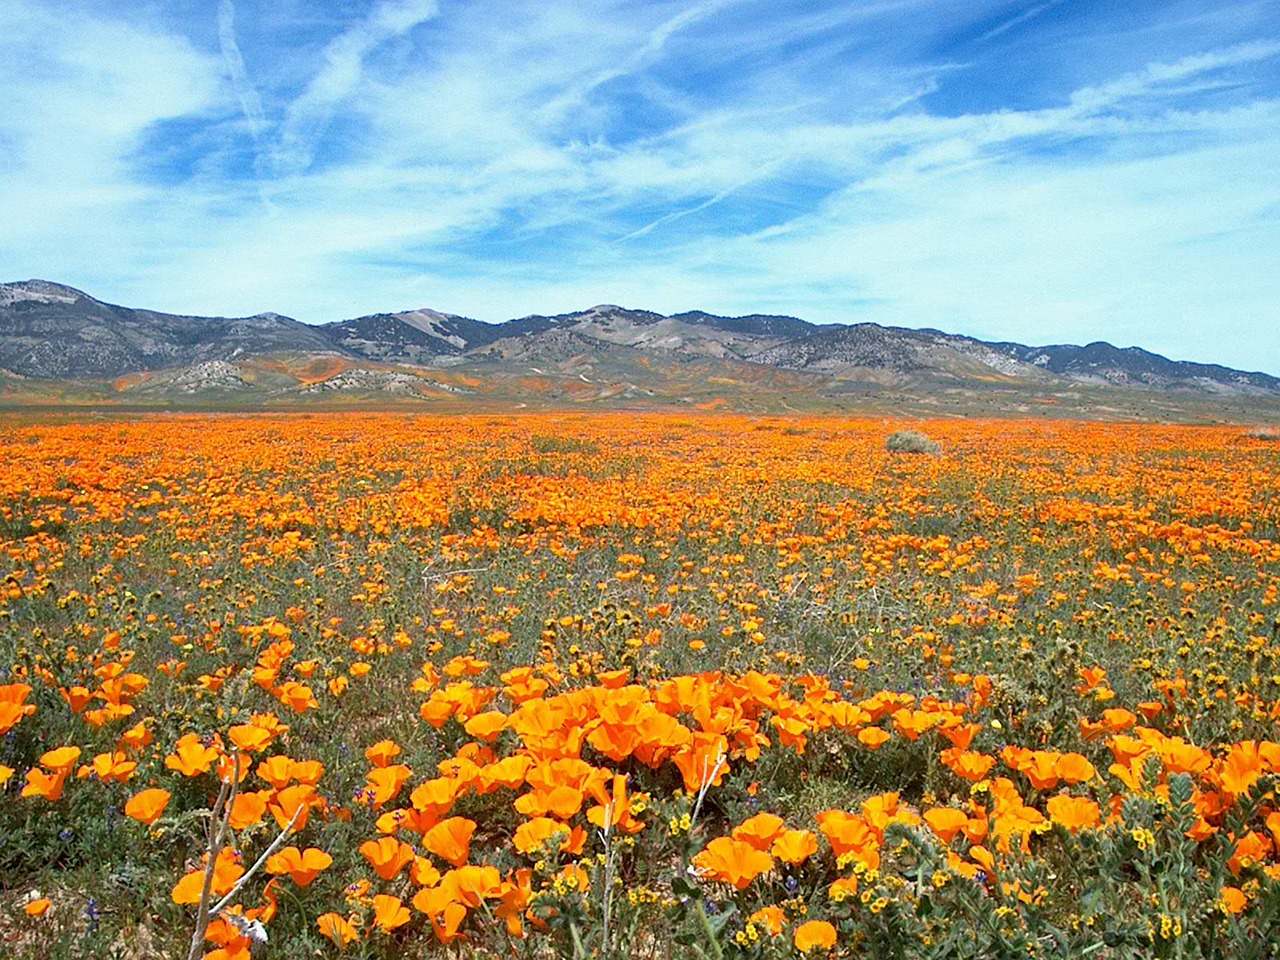 Field of flowers in California